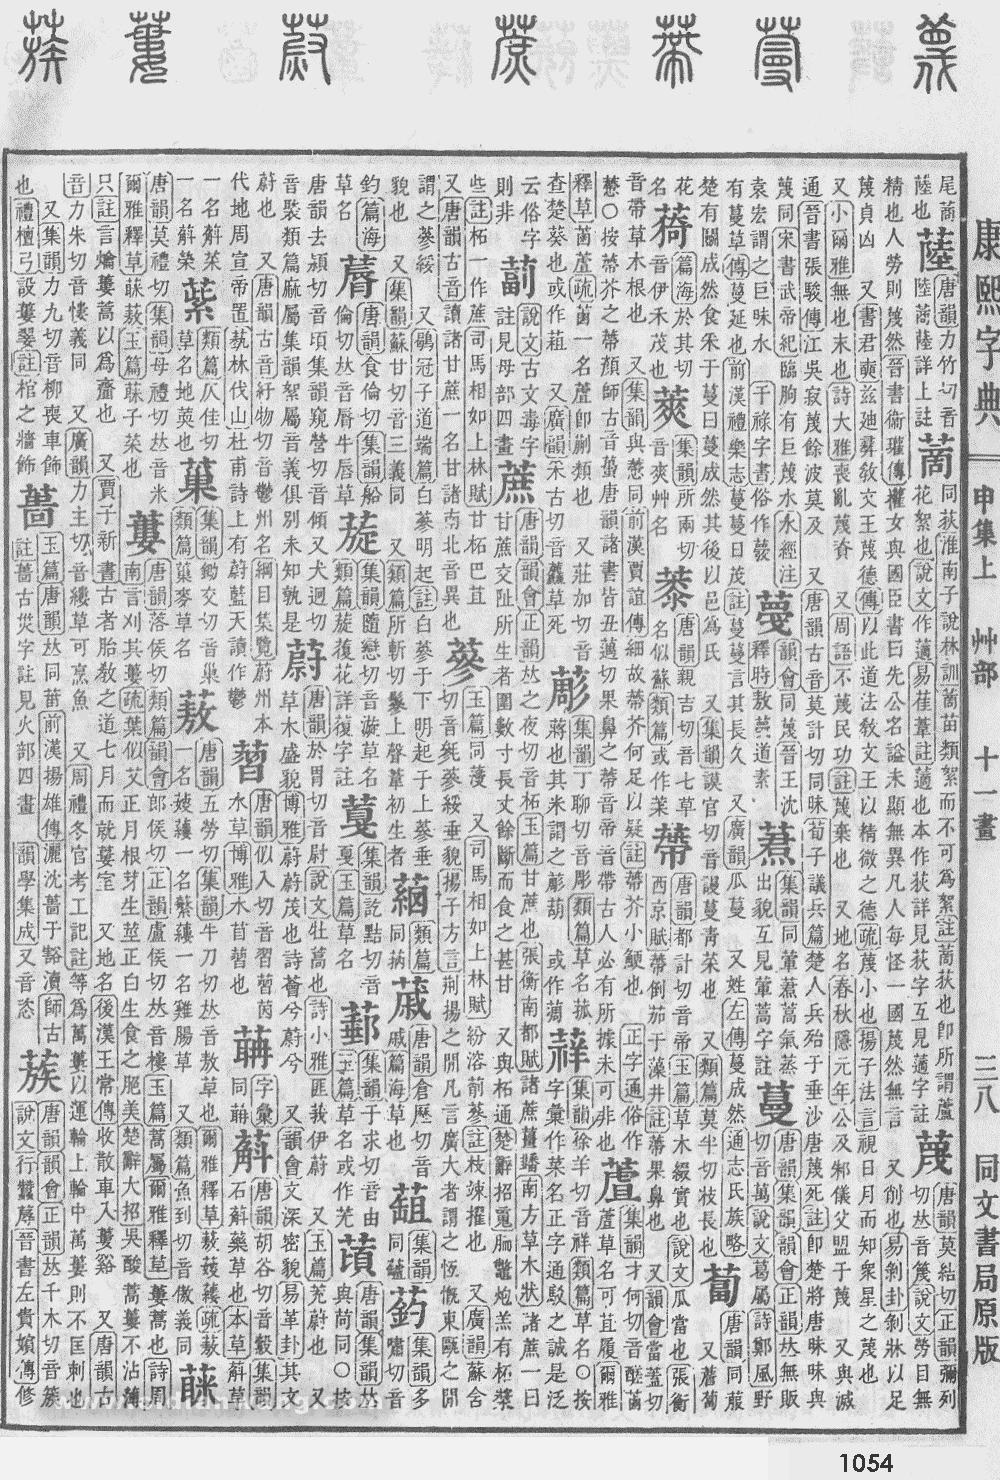 康熙字典掃描版第1054頁